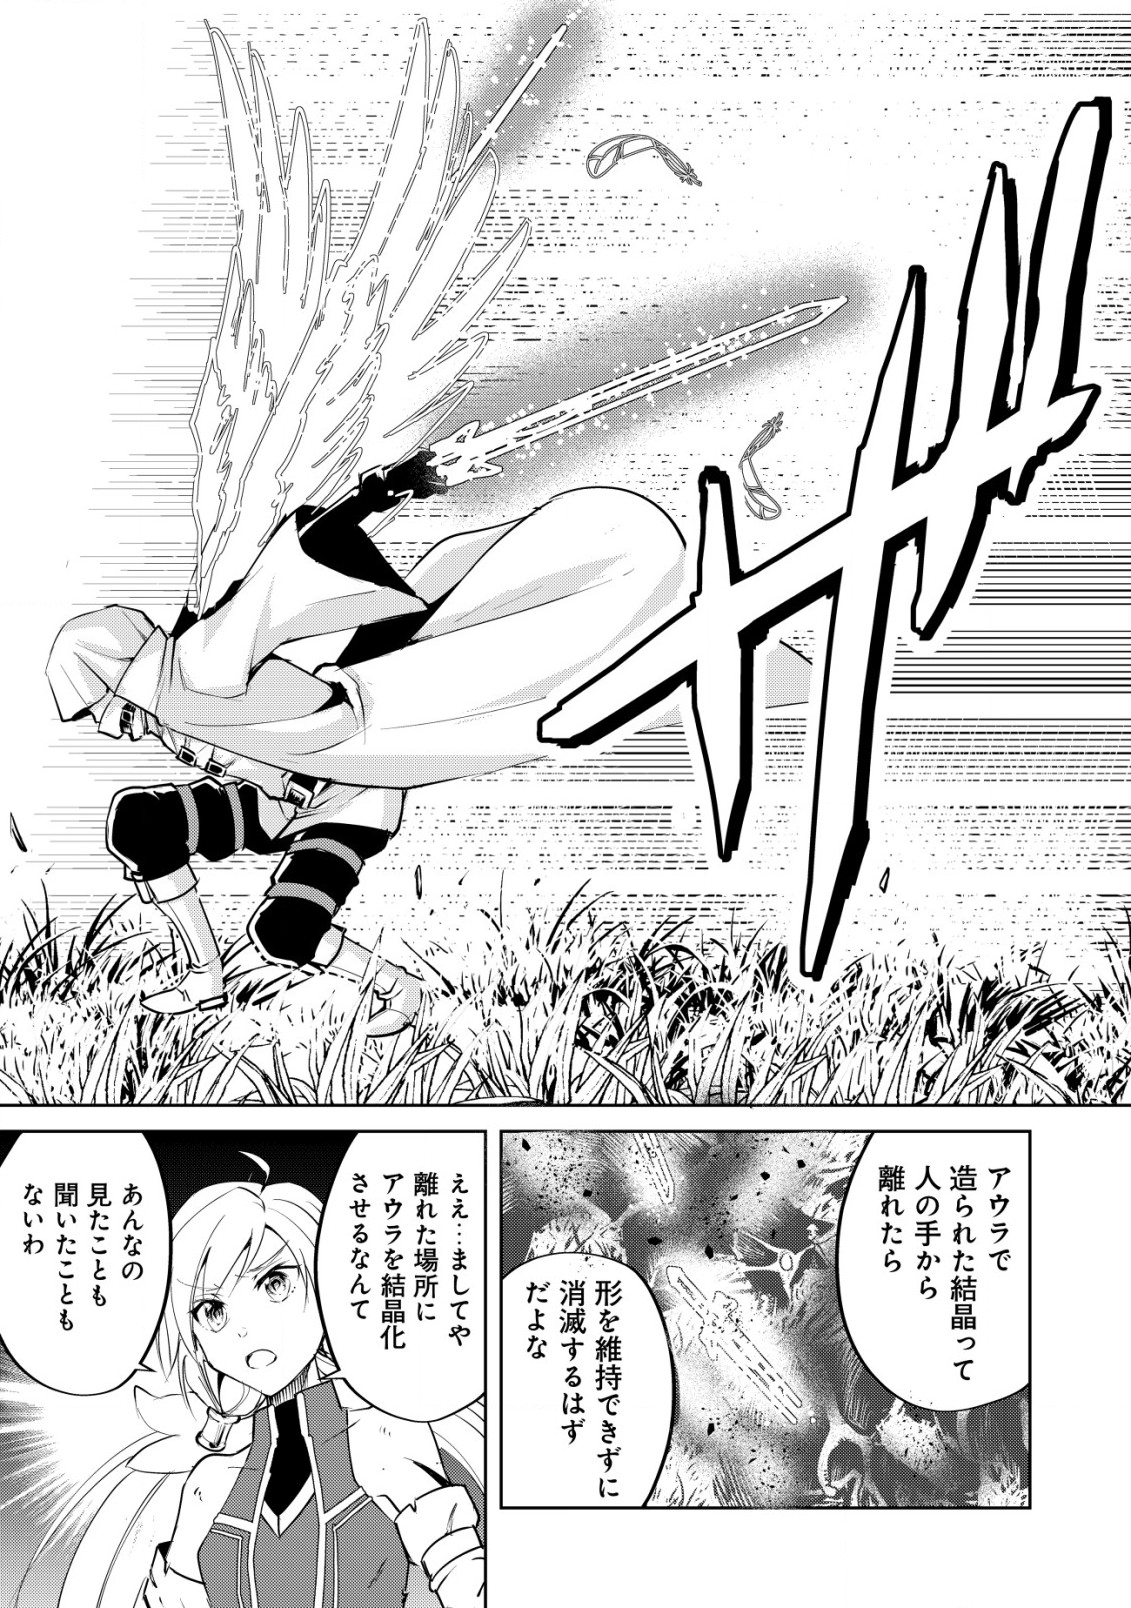 Ten to Chi to Hazama no Sekai Yelatium - Chapter 5.2 - Page 11